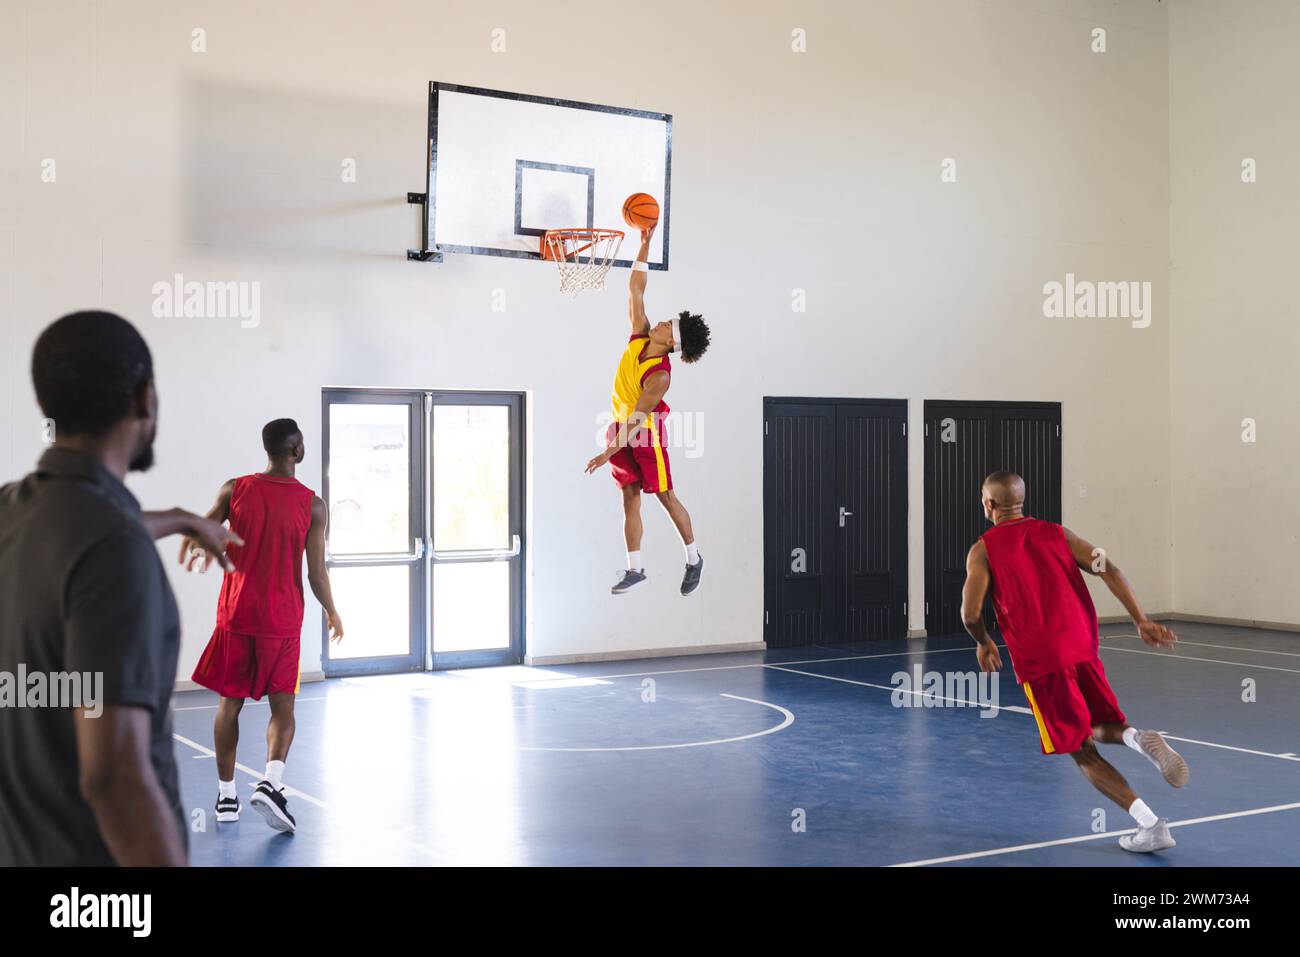 Ein junger Afroamerikaner springt in ein Basketballspiel in einem Fitnessstudio Stockfoto